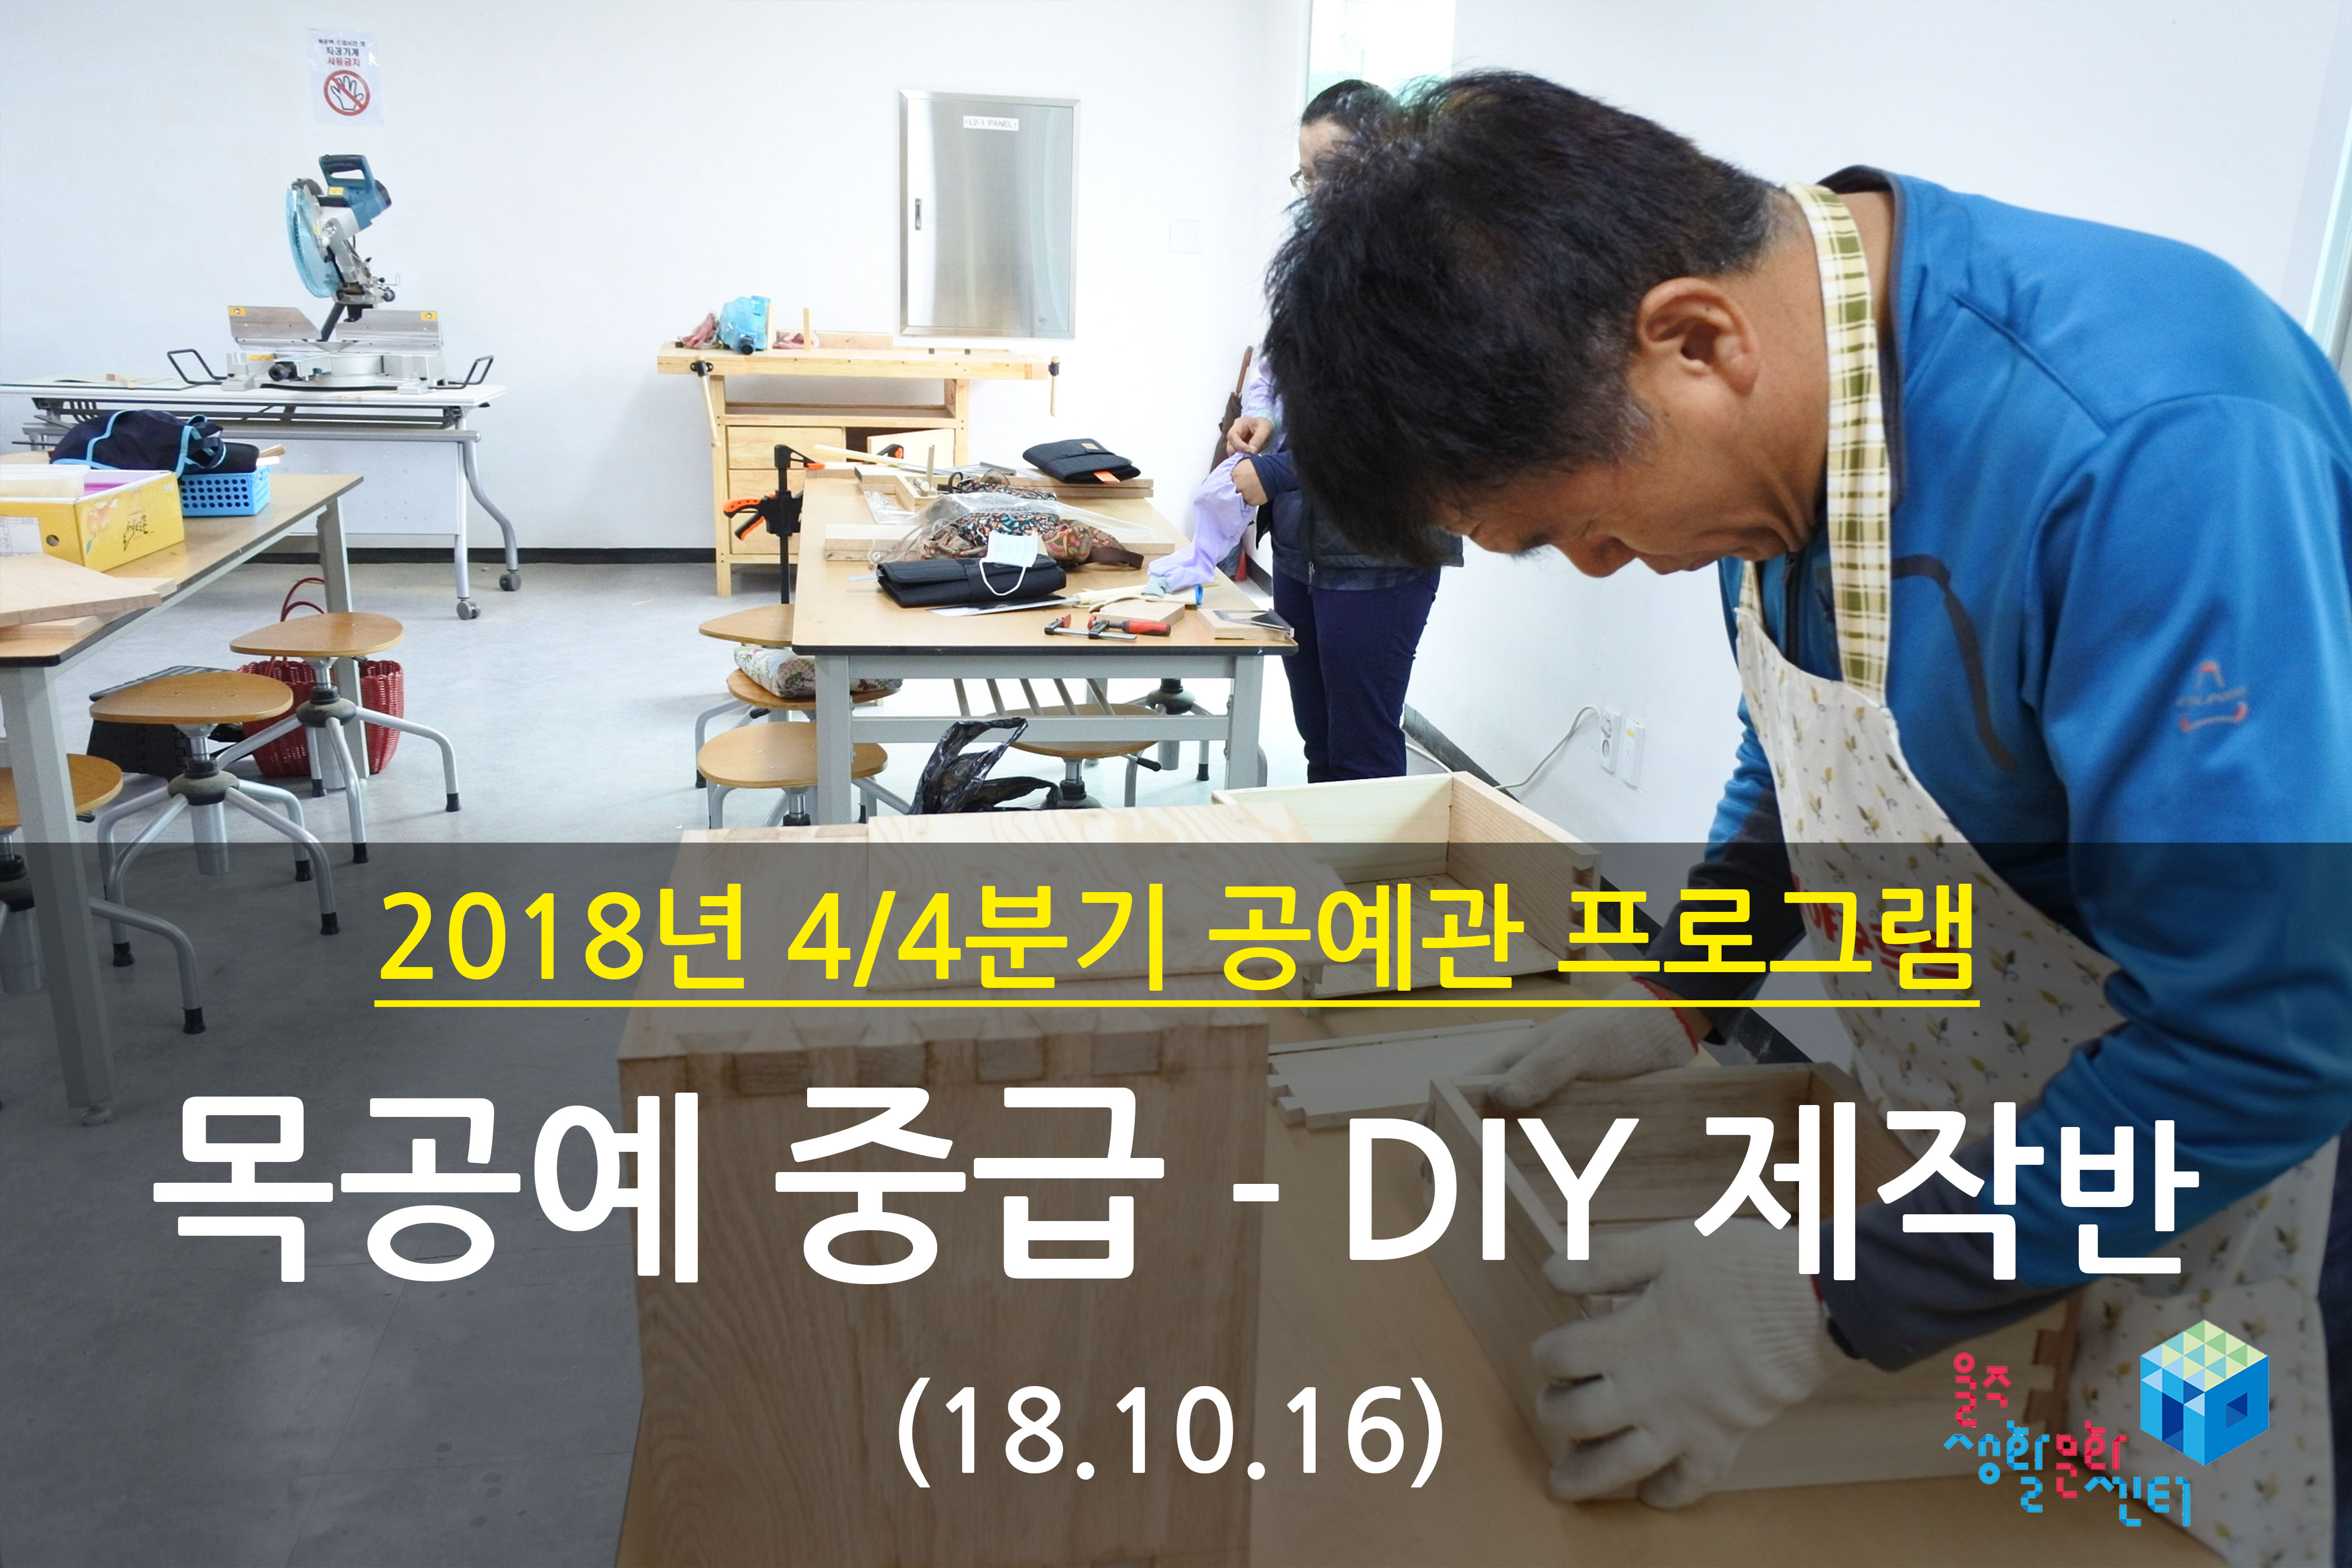 2018.10.16 _ 목공예 중급 - DIY 제작반 _ 4/4분기 2주차 수업